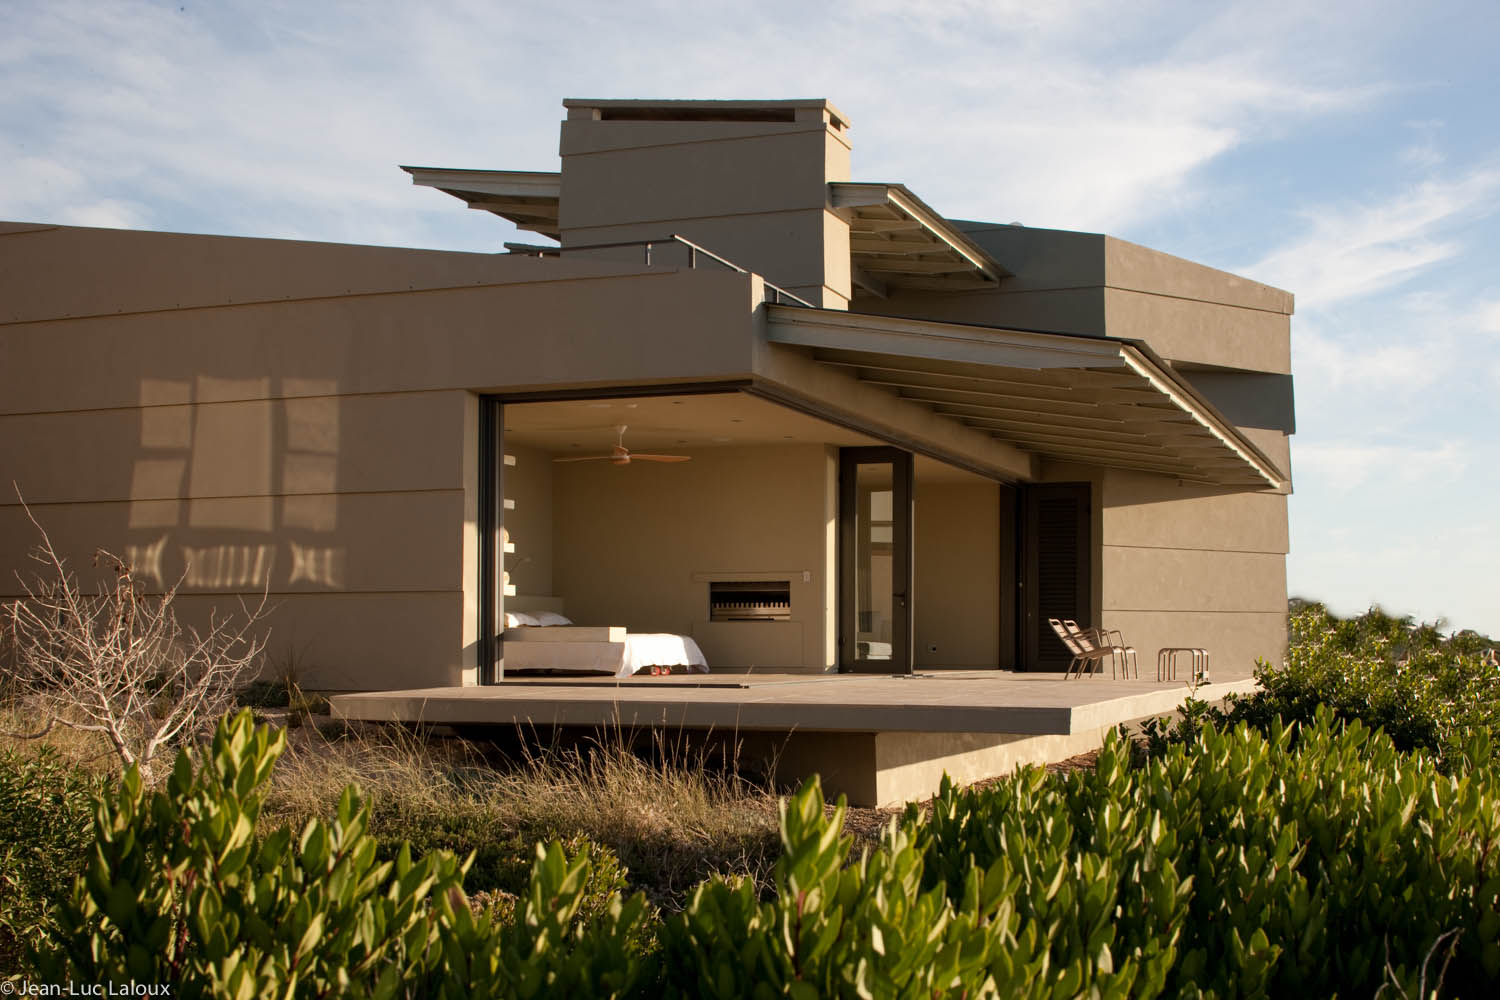 Slee & Co. Architects : De Kelders Beach House | Flodeau.com